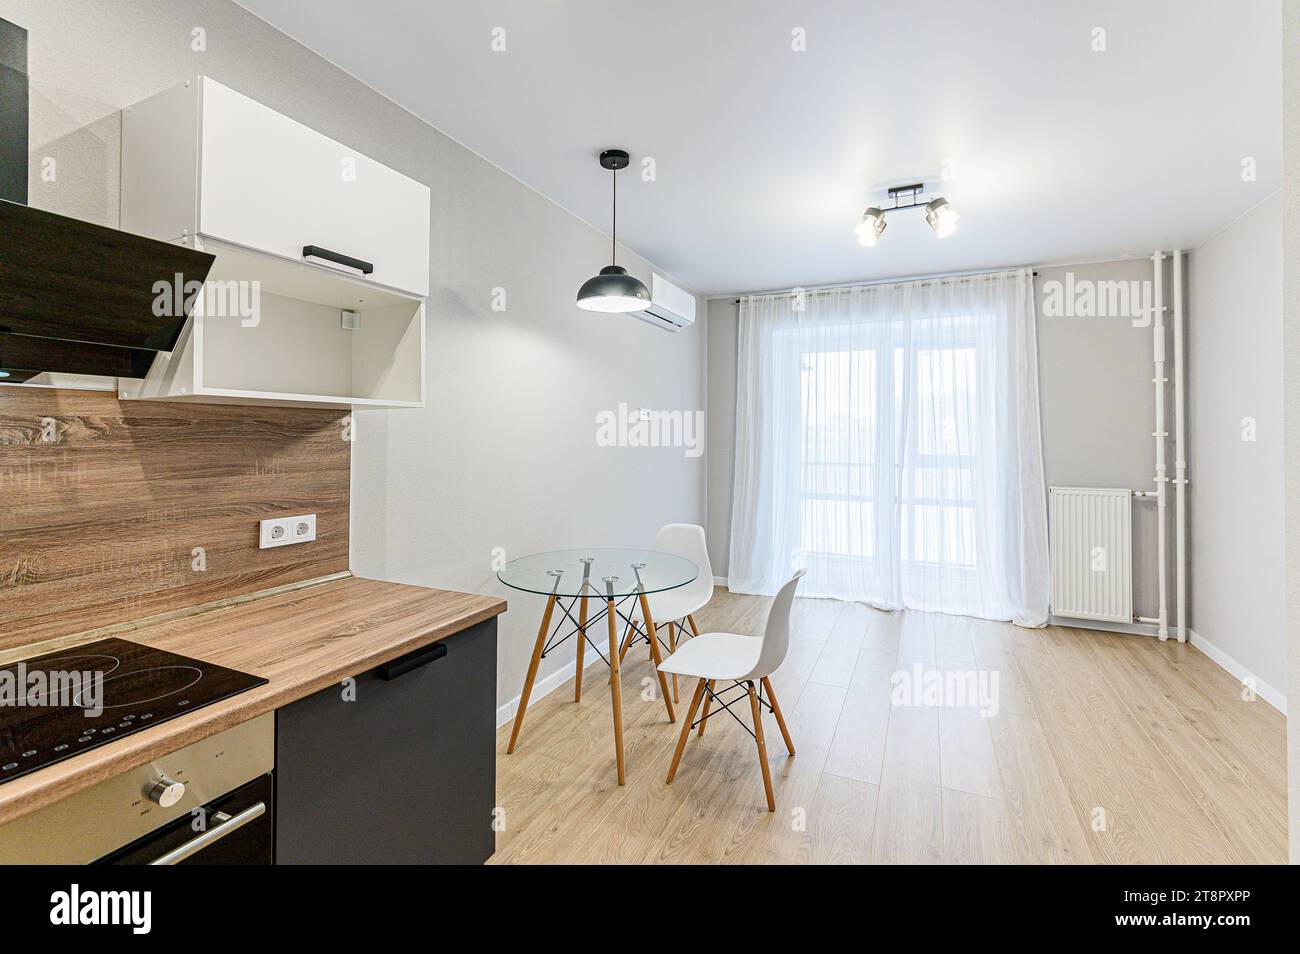 intérieur appartement cuisine et salle à manger, réfectoire, matériel de cuisine, meubles de table, cuisinière Banque D'Images